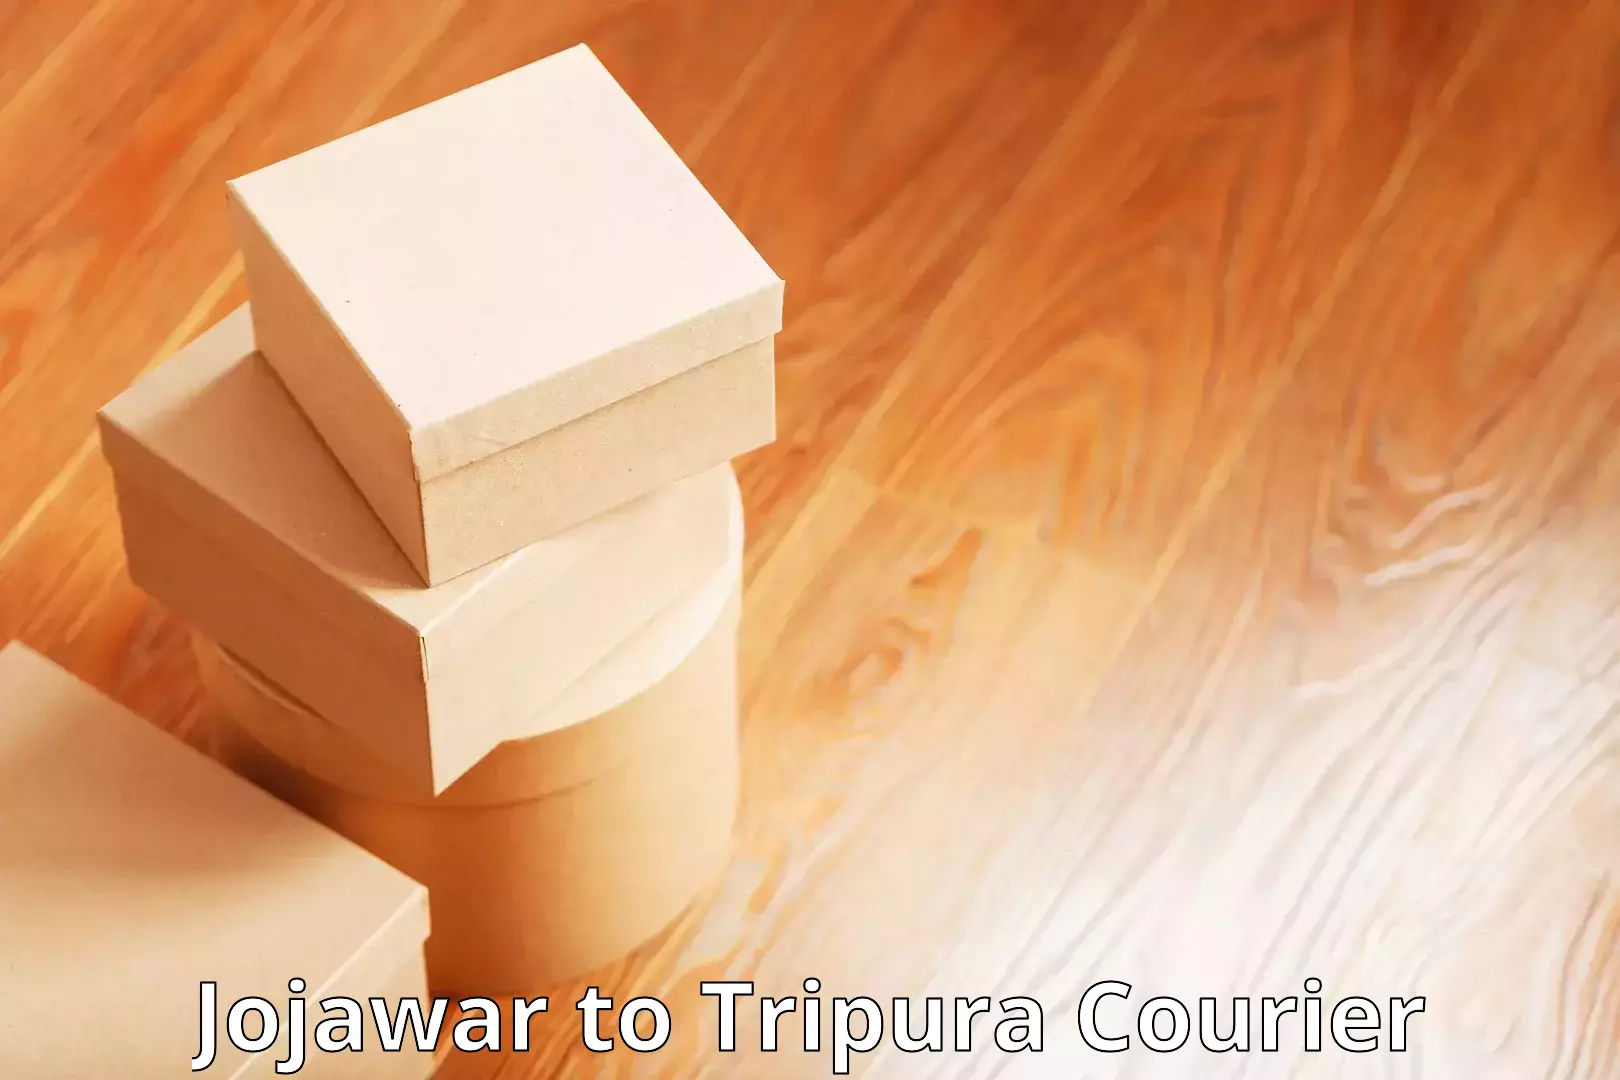 Express logistics Jojawar to Amarpur